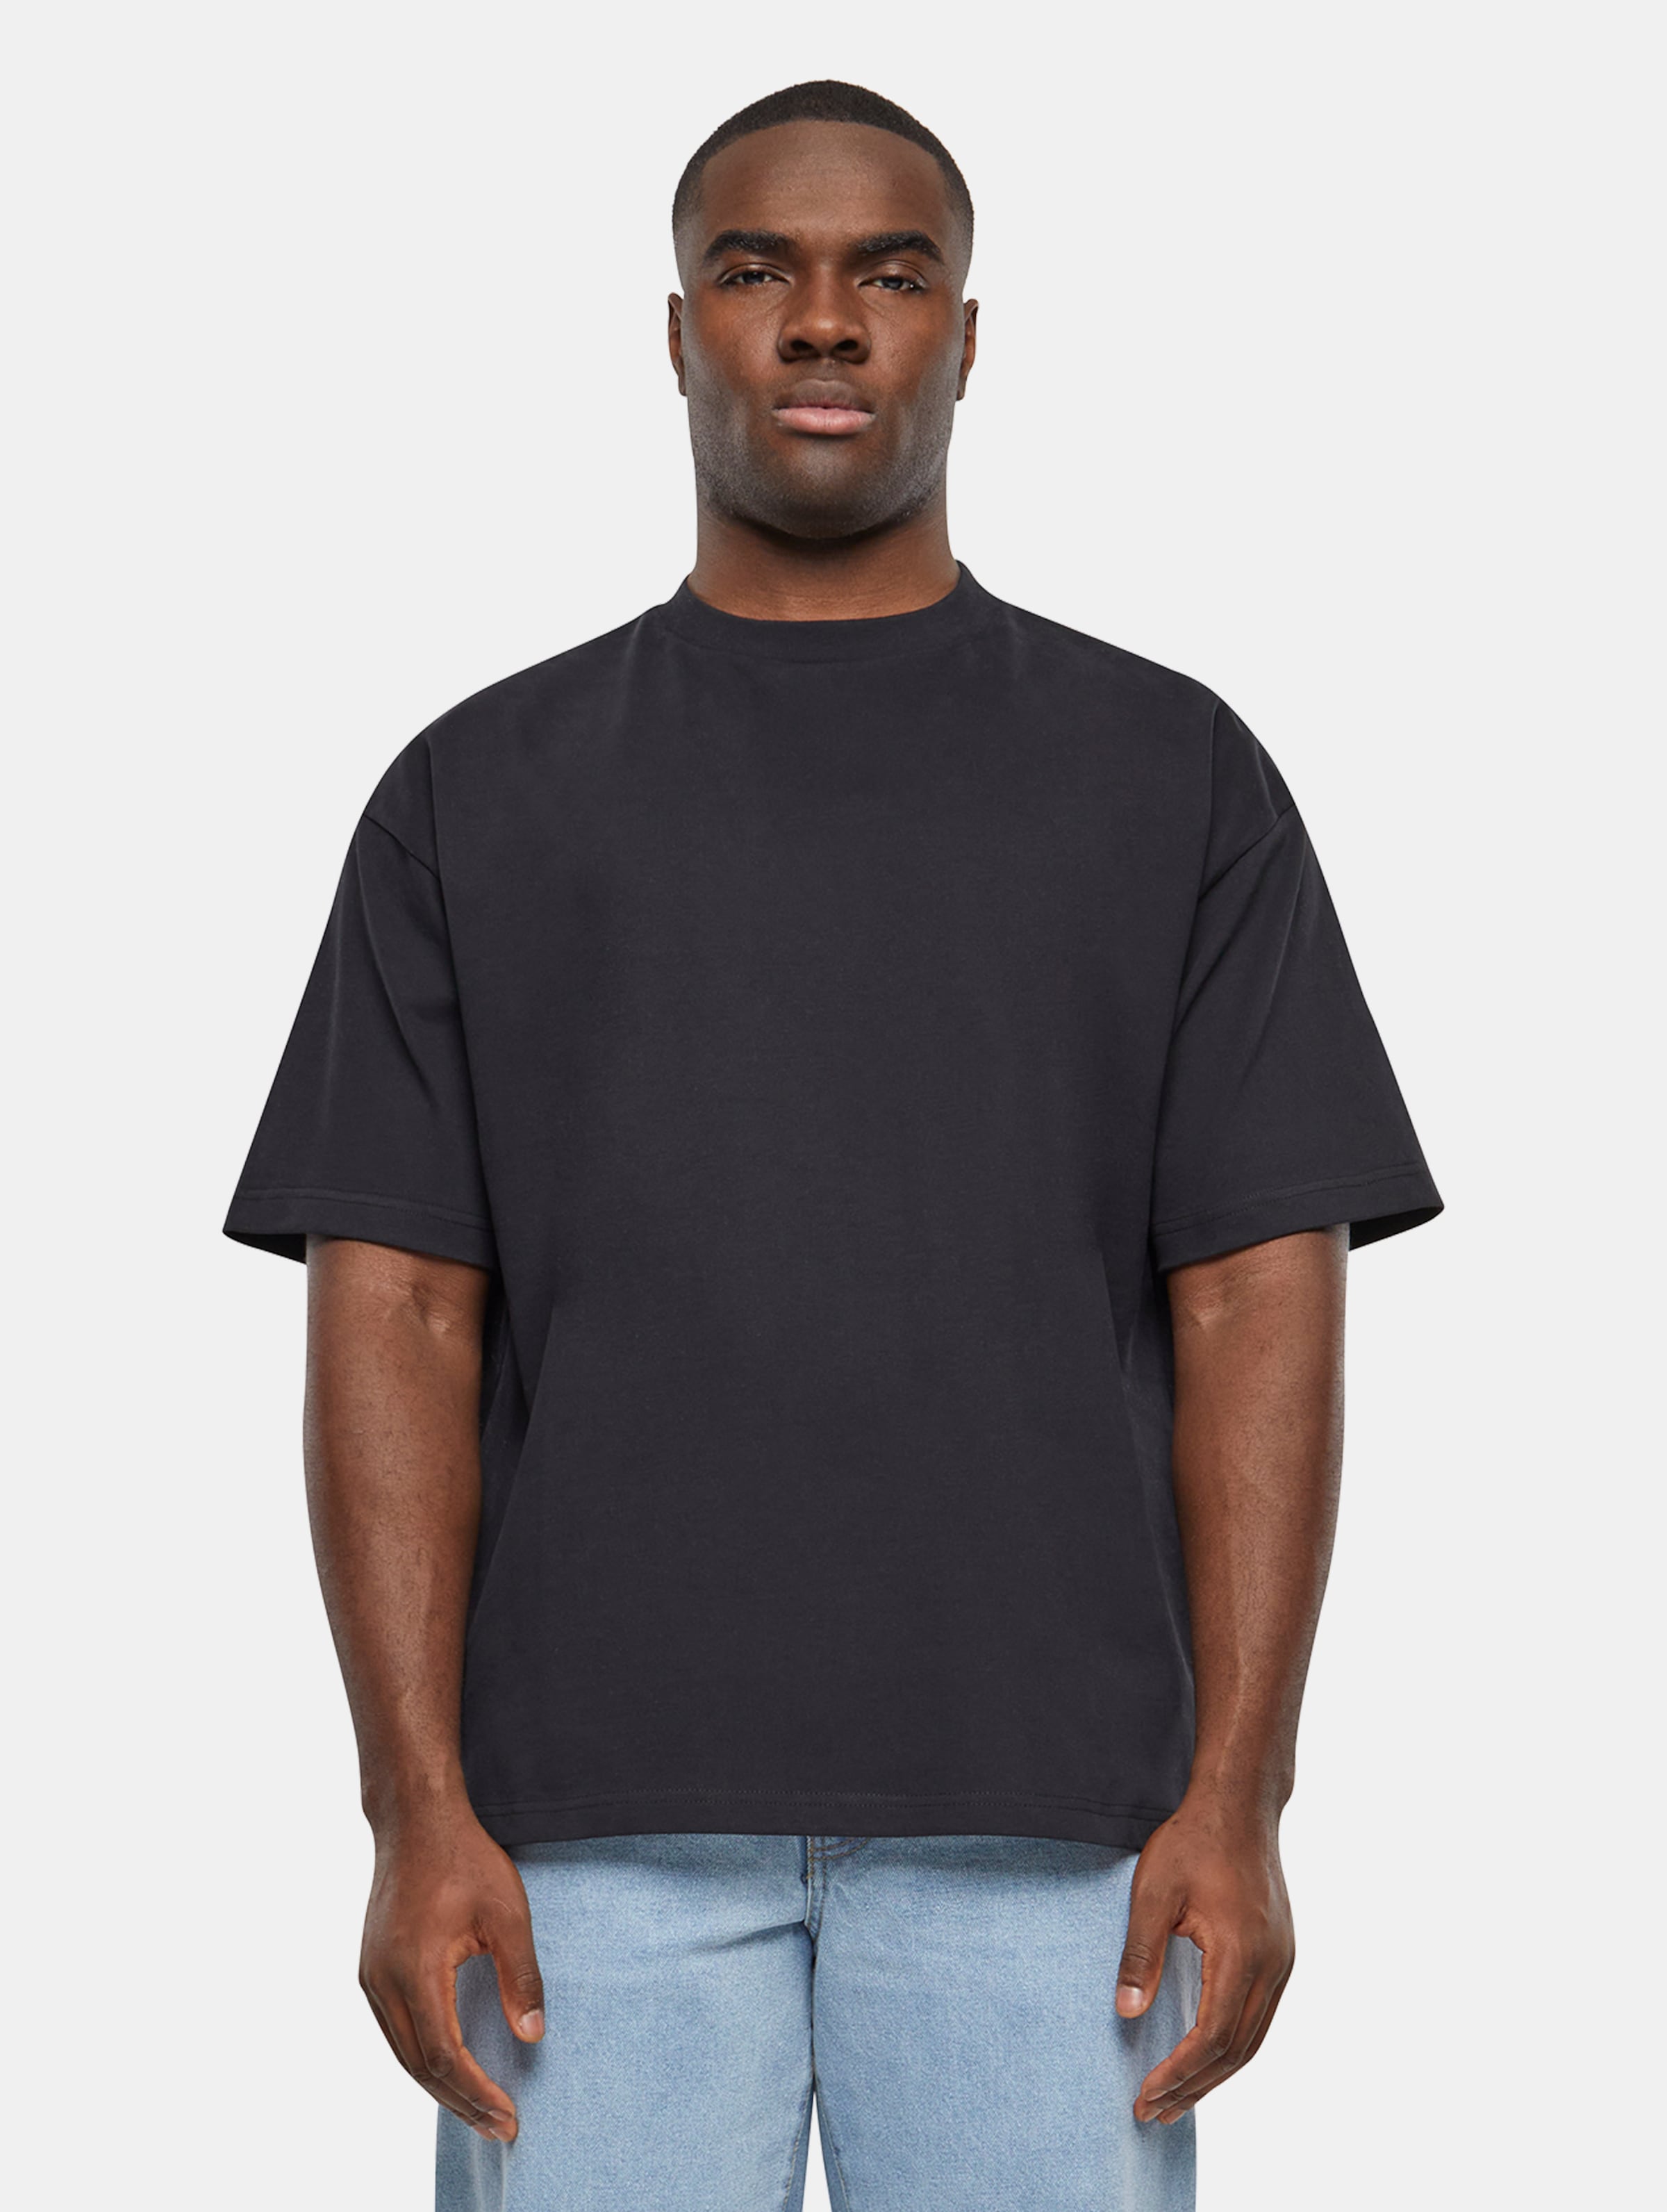 Prohibited Oversized T-Shirts Männer,Unisex op kleur zwart, Maat XL